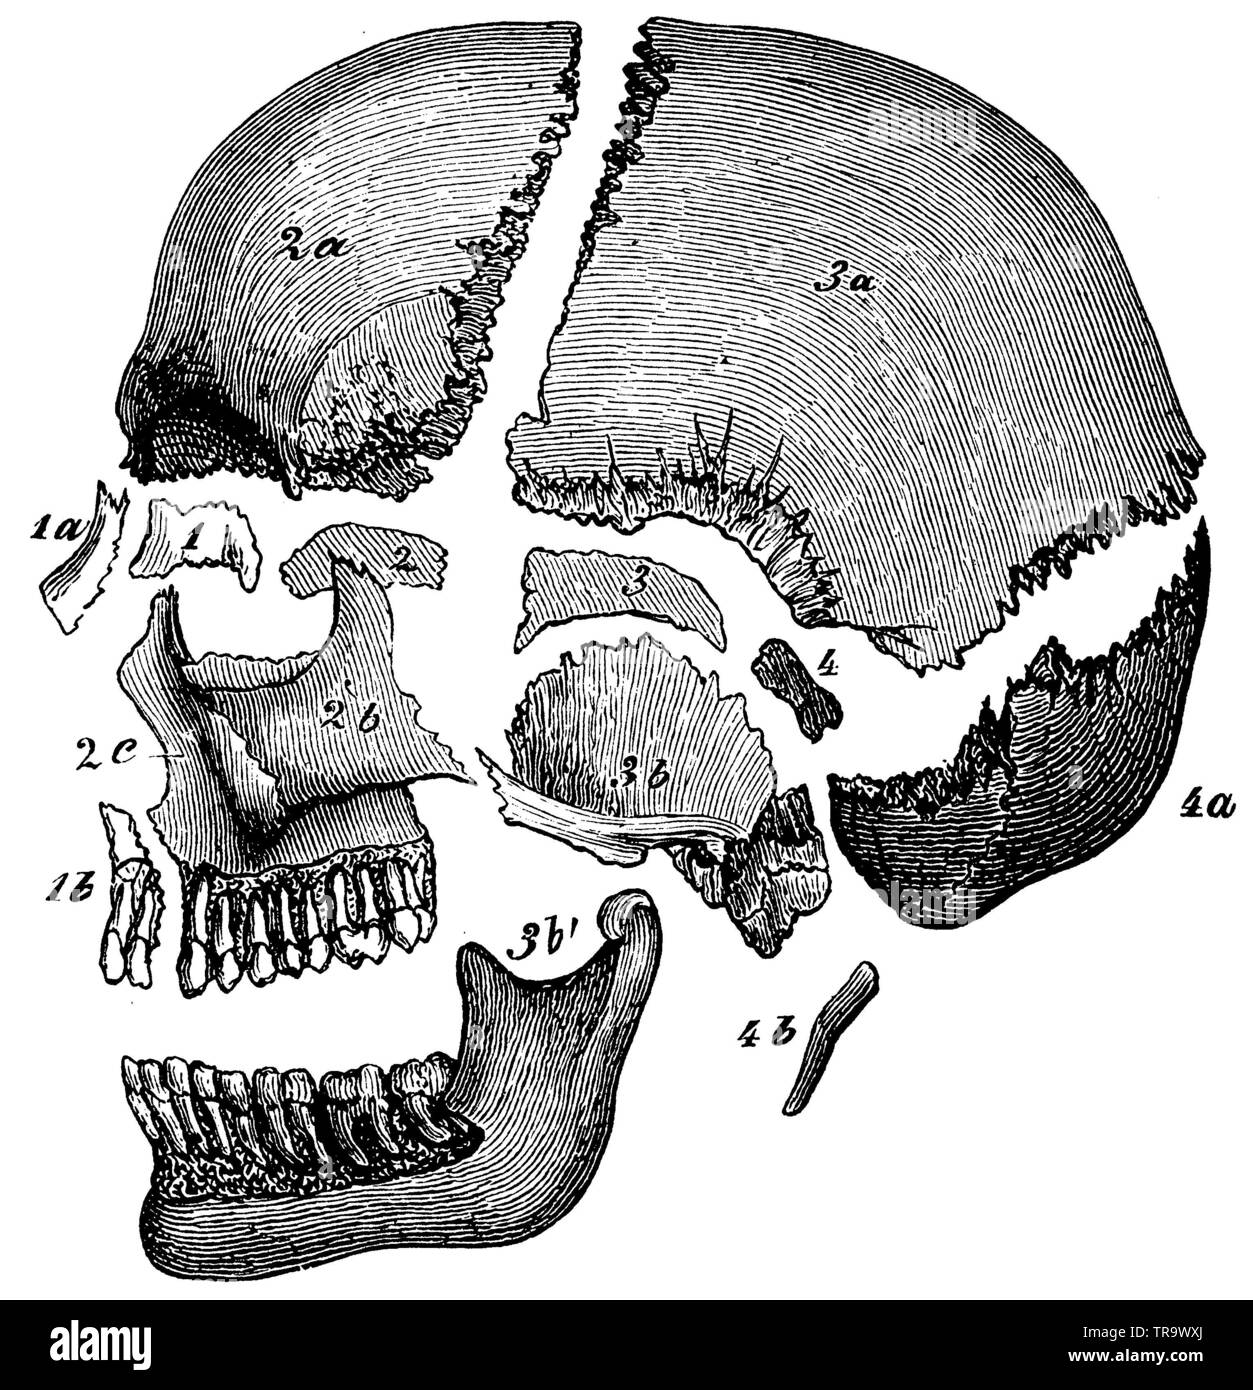 Cranio umano dal lato, le singole ossa separate le une dalle altre. I pezzi appartenenti ai quattro vertebre cranio sono contrassegnati 1-4. 1) sinusite etmoide osso, 1a) osso nasale, 1b) ganascia intermaxillary, 2) parte anteriore di osso cuneiforme, 2a) Fronte osso, 2b) osso zigomatico, 2c) ganascia superiore, 3) della parte posteriore dell'osso cuneiforme, 3a) osso parietale, 3b) osso temporale, 3b') mandibola, 4 e 4 a) osso occipitale, 4b) hyoid osso, , (Enciclopedia, 1893) Foto Stock